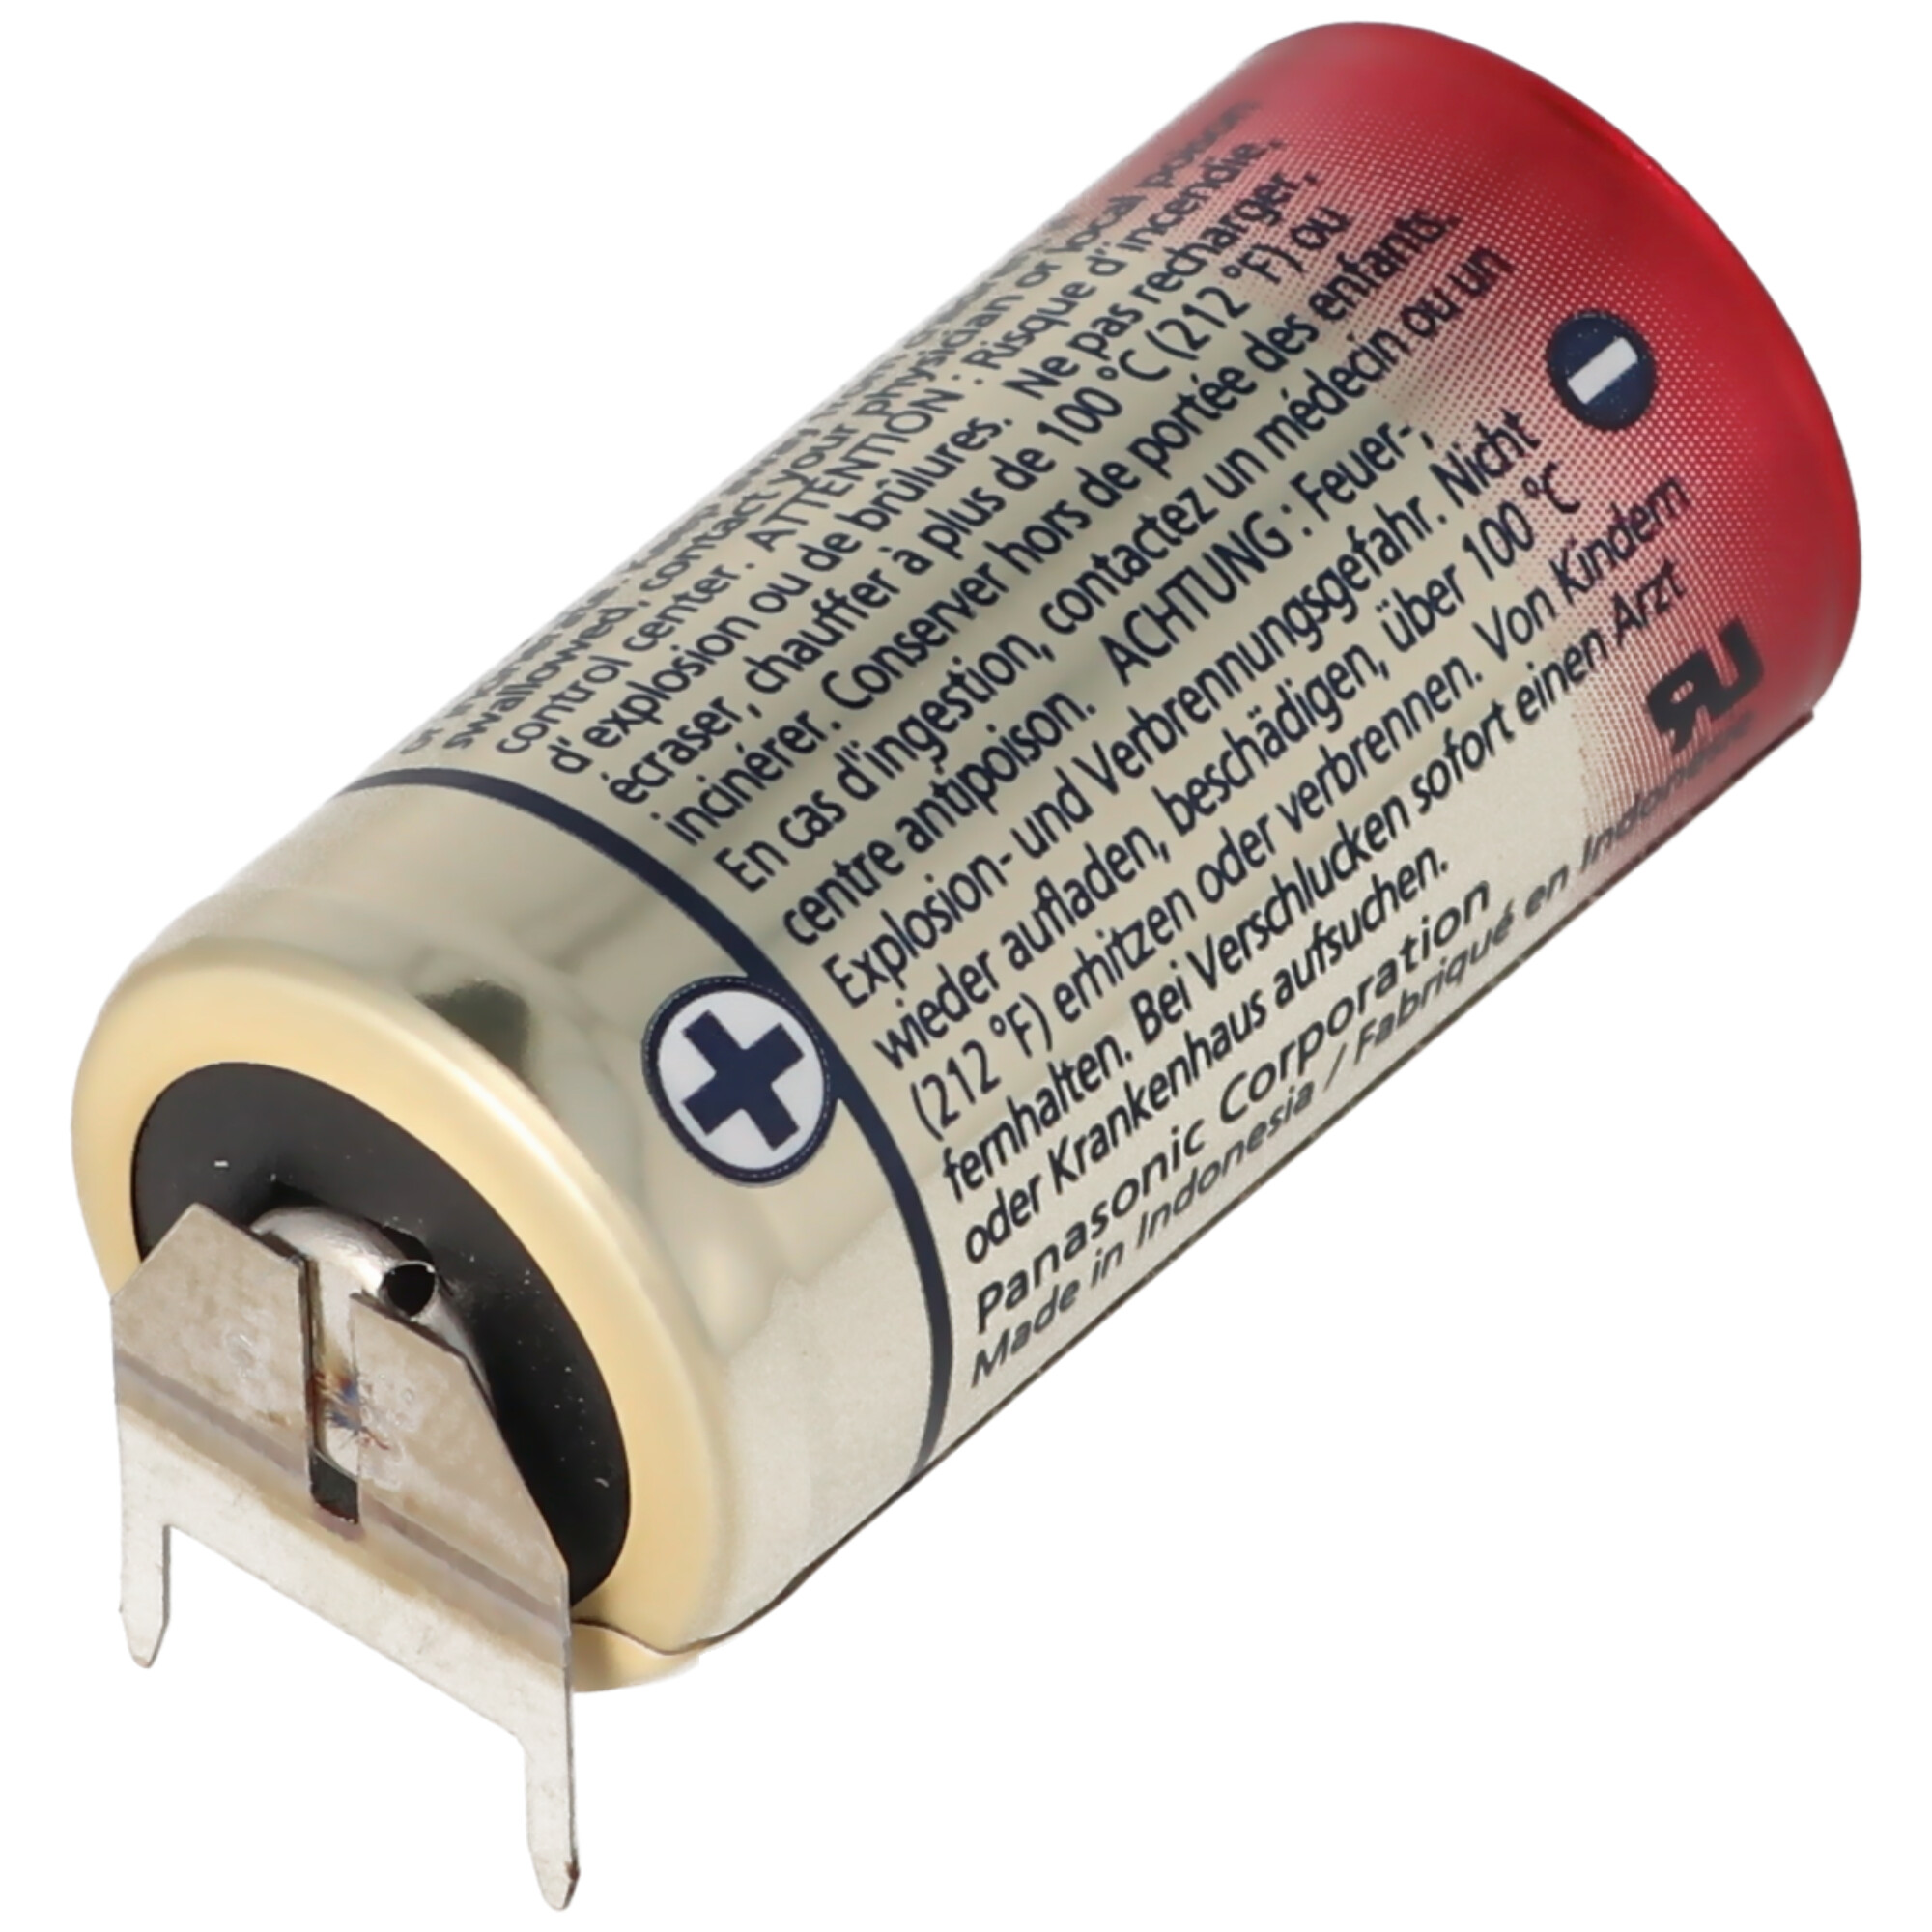 CR123A Batterie mit 3er Printanschluss 2er Print + 1er Print - Kontakten, Spannung 3 Volt Rastermaß 10mm